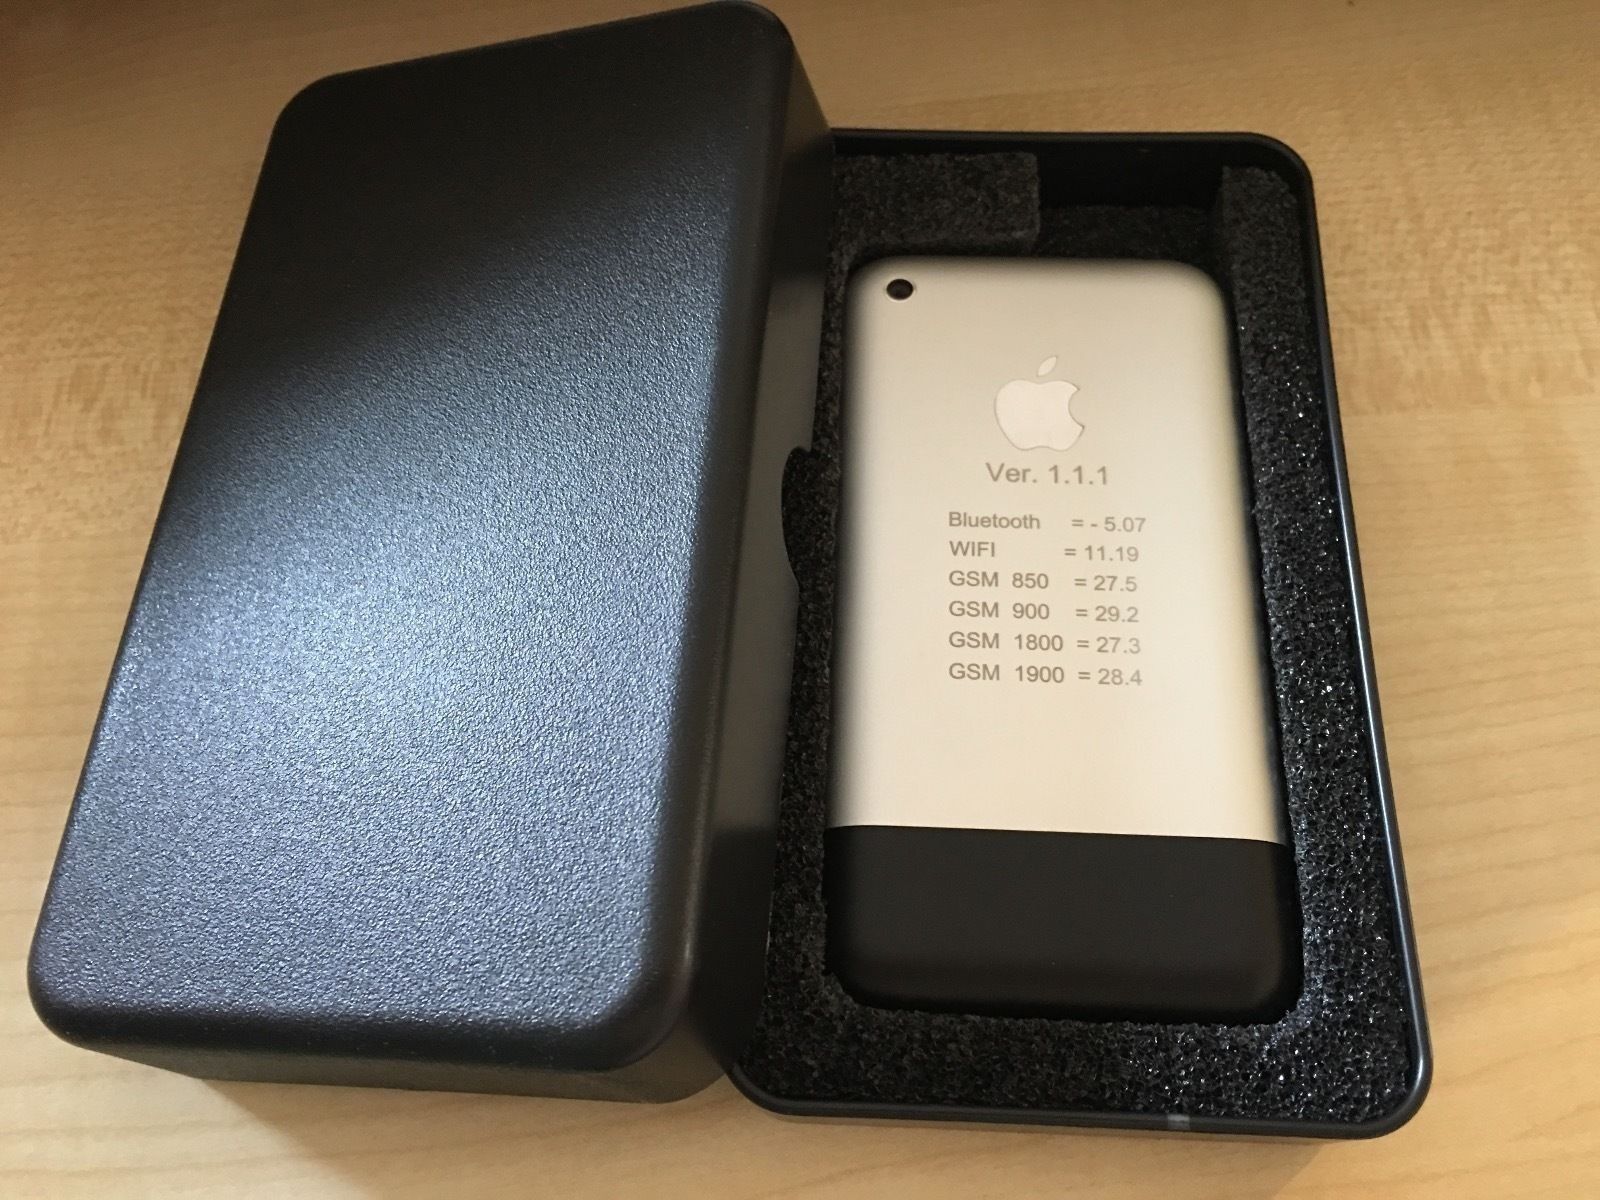 Az eBay-en árulják az iPhone-ok ősanyját, már 10 millió forintnál jár a licit